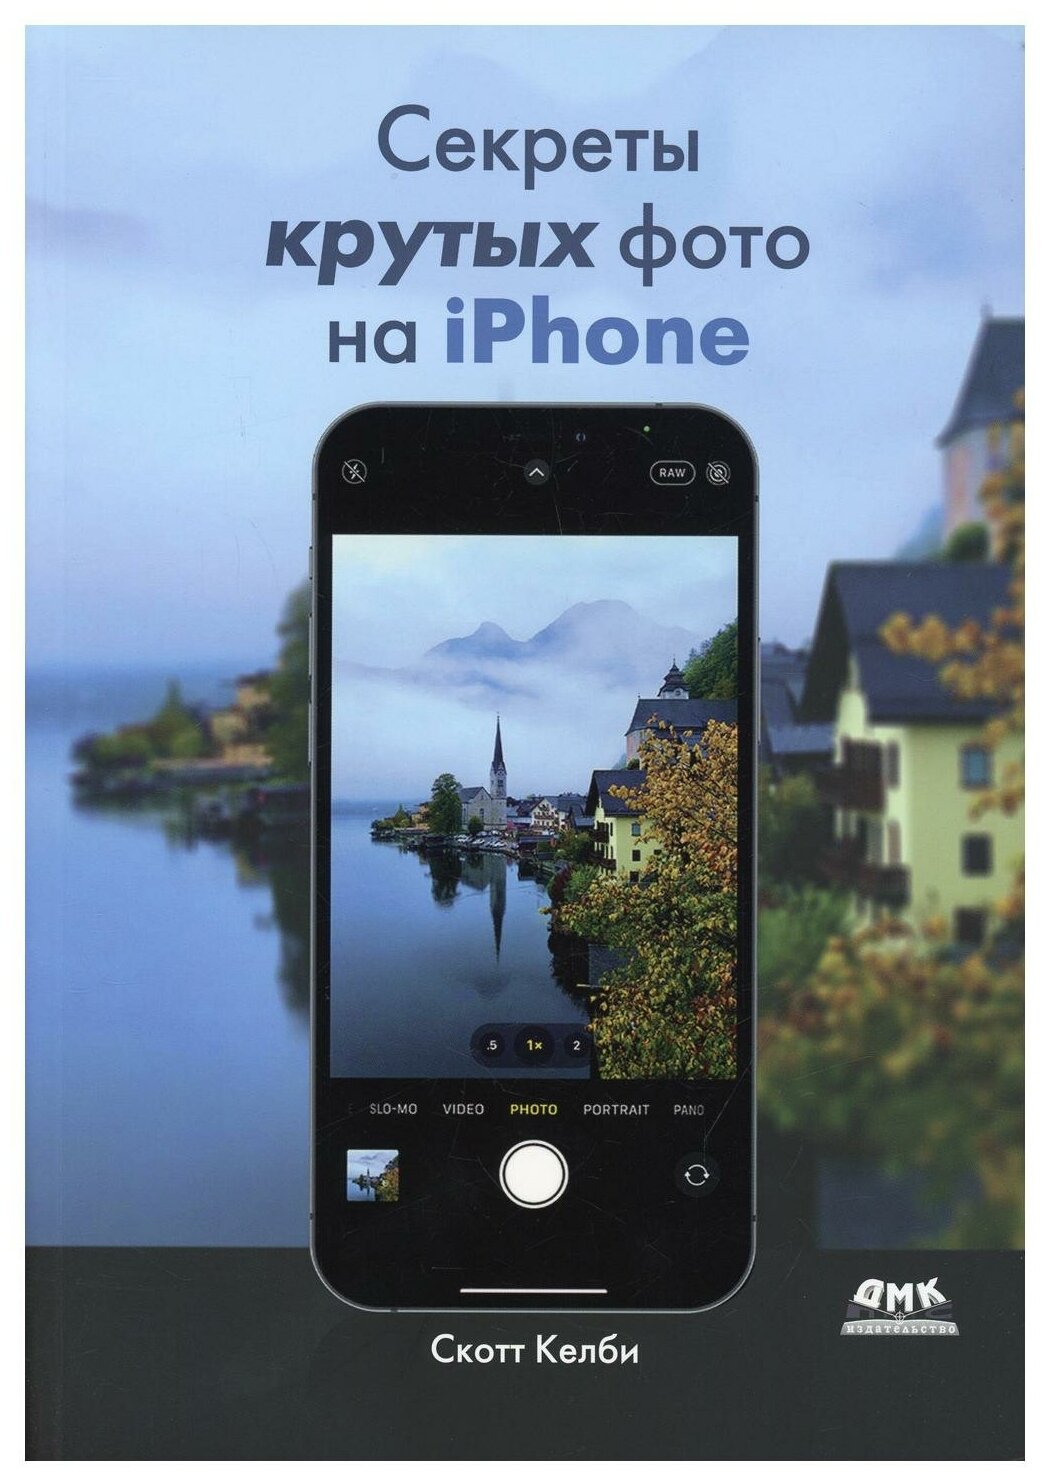 Секреты крутых фото на iPhone Как сделать профессиональные снимки с помощью смартфона - фото №1